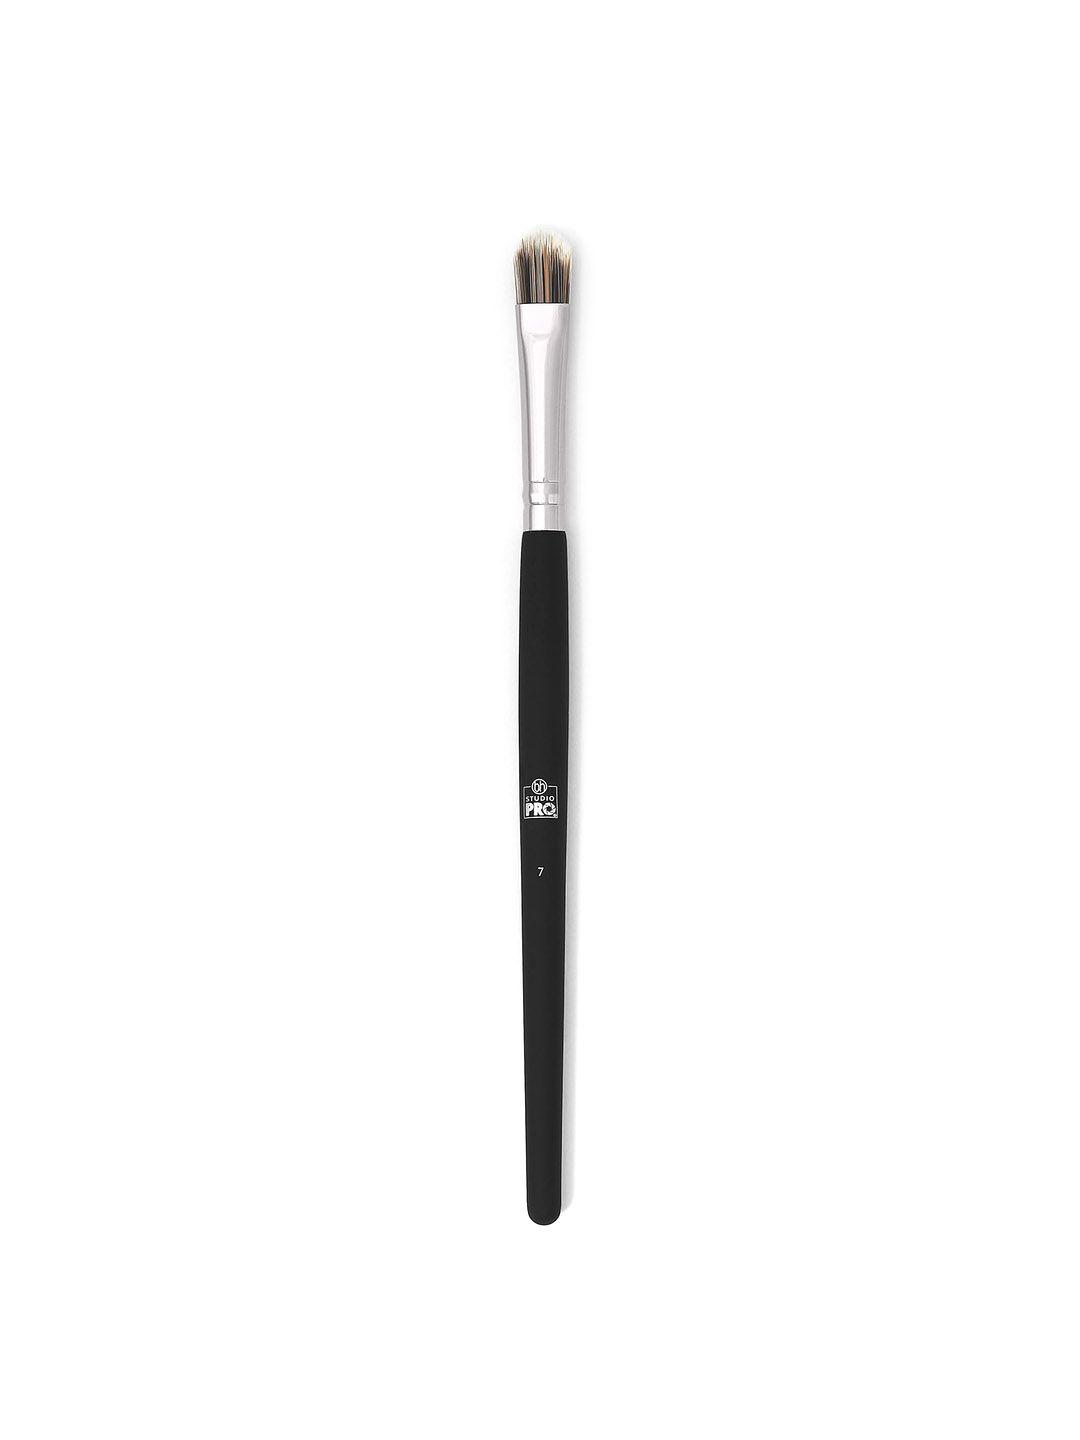 bh cosmetics studio pro brush 7 flat shader eye shadow brush - black